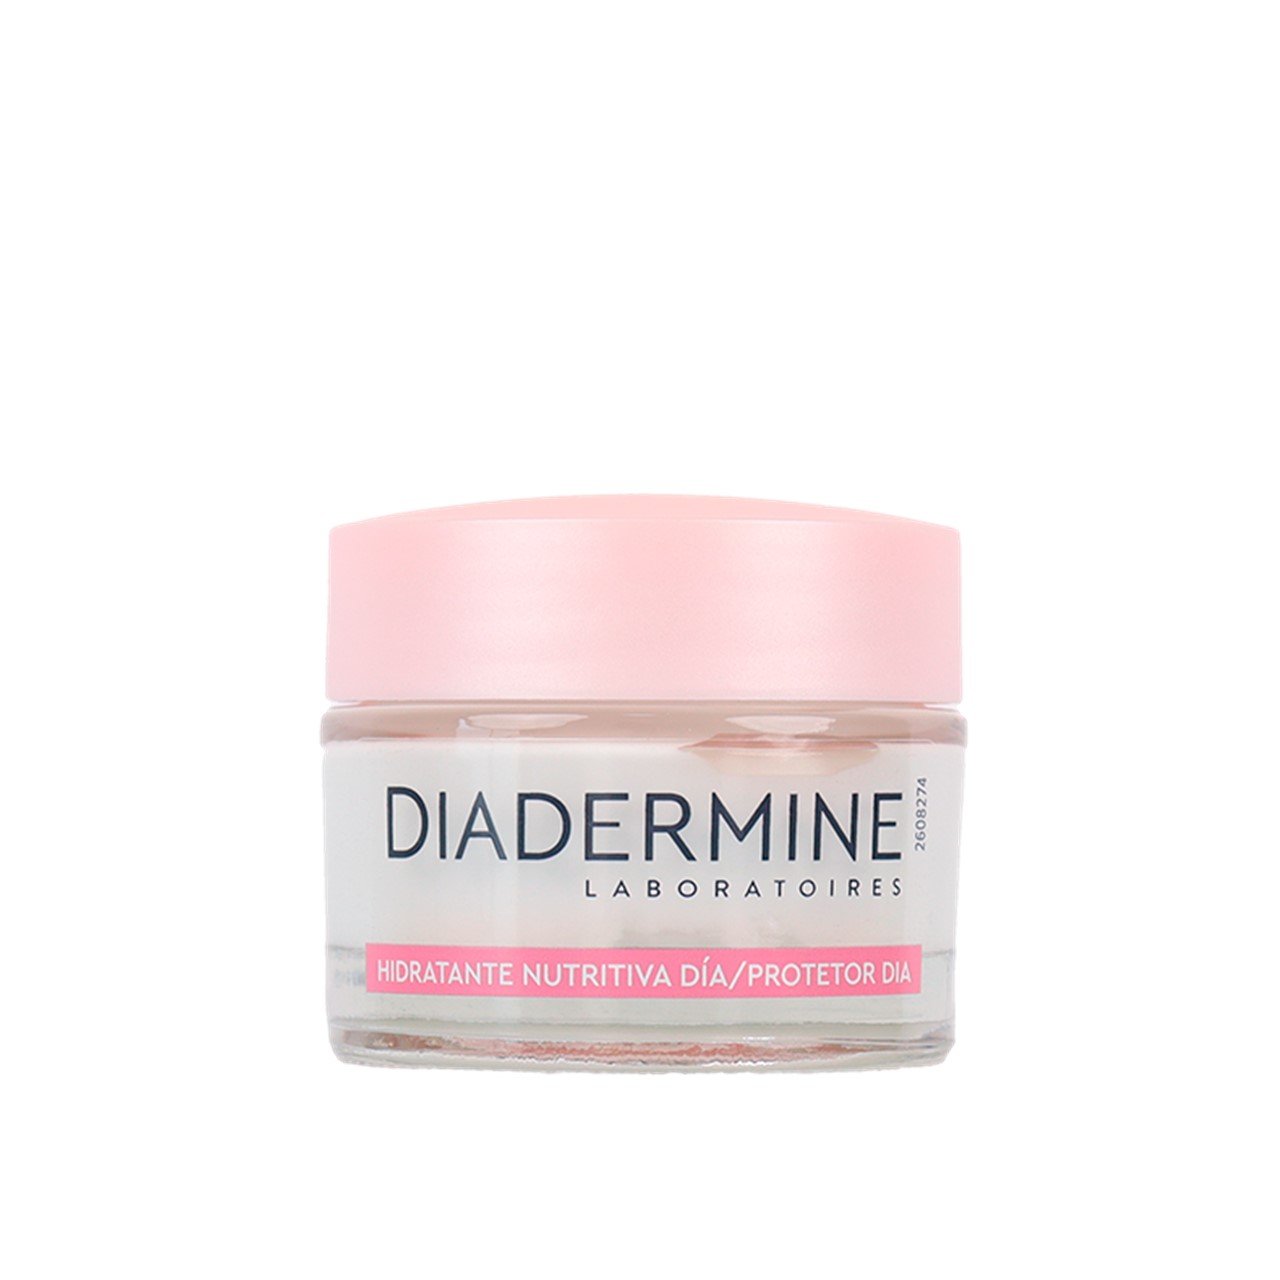 Diadermine Nourishing Moisturizing Day Cream 50ml